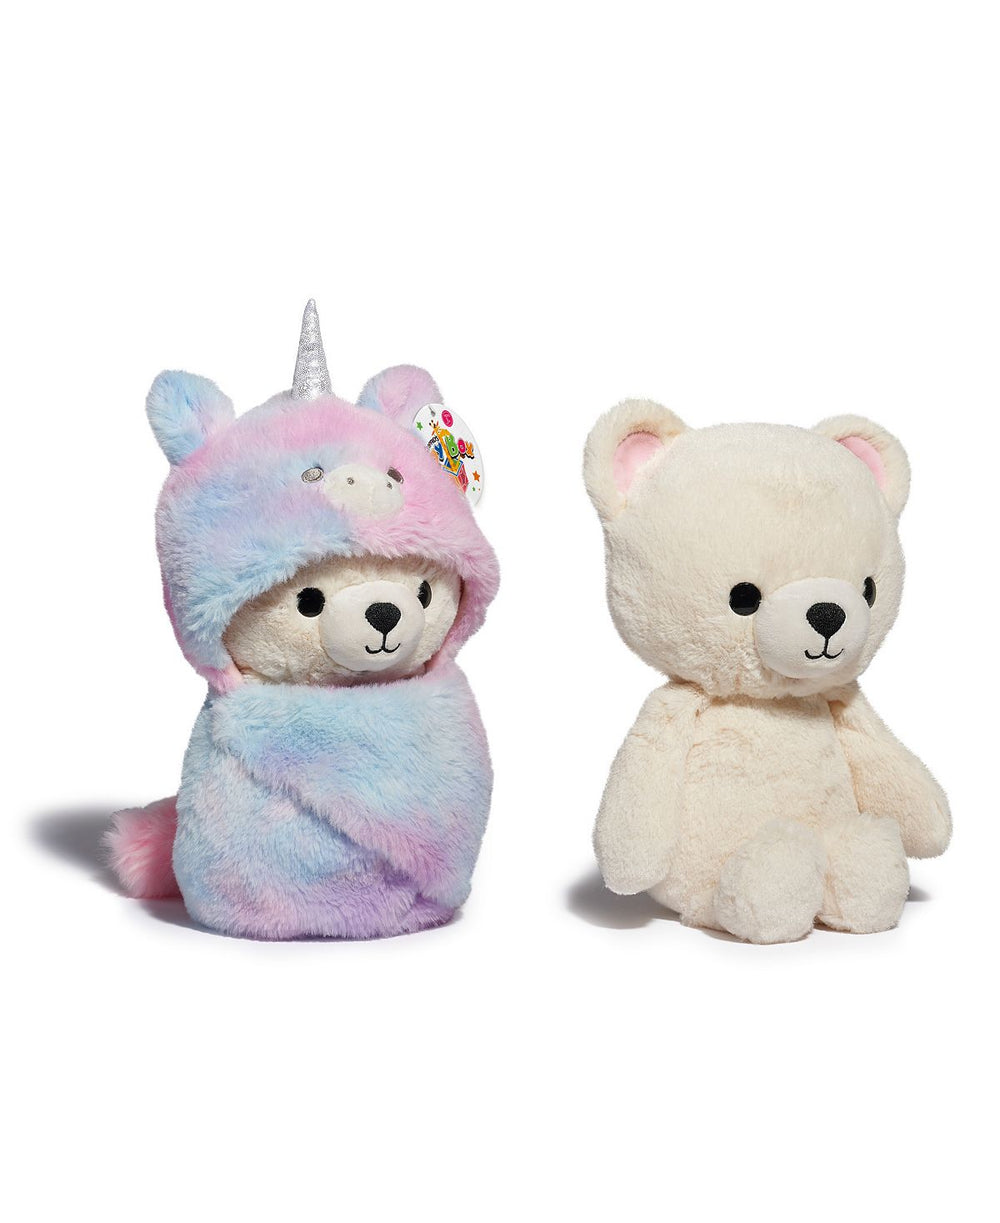 Geoffrey's Toy Box 10 inch Cozie Friends Teddy Bear Unicorn Plush - Exclusive for Macy's